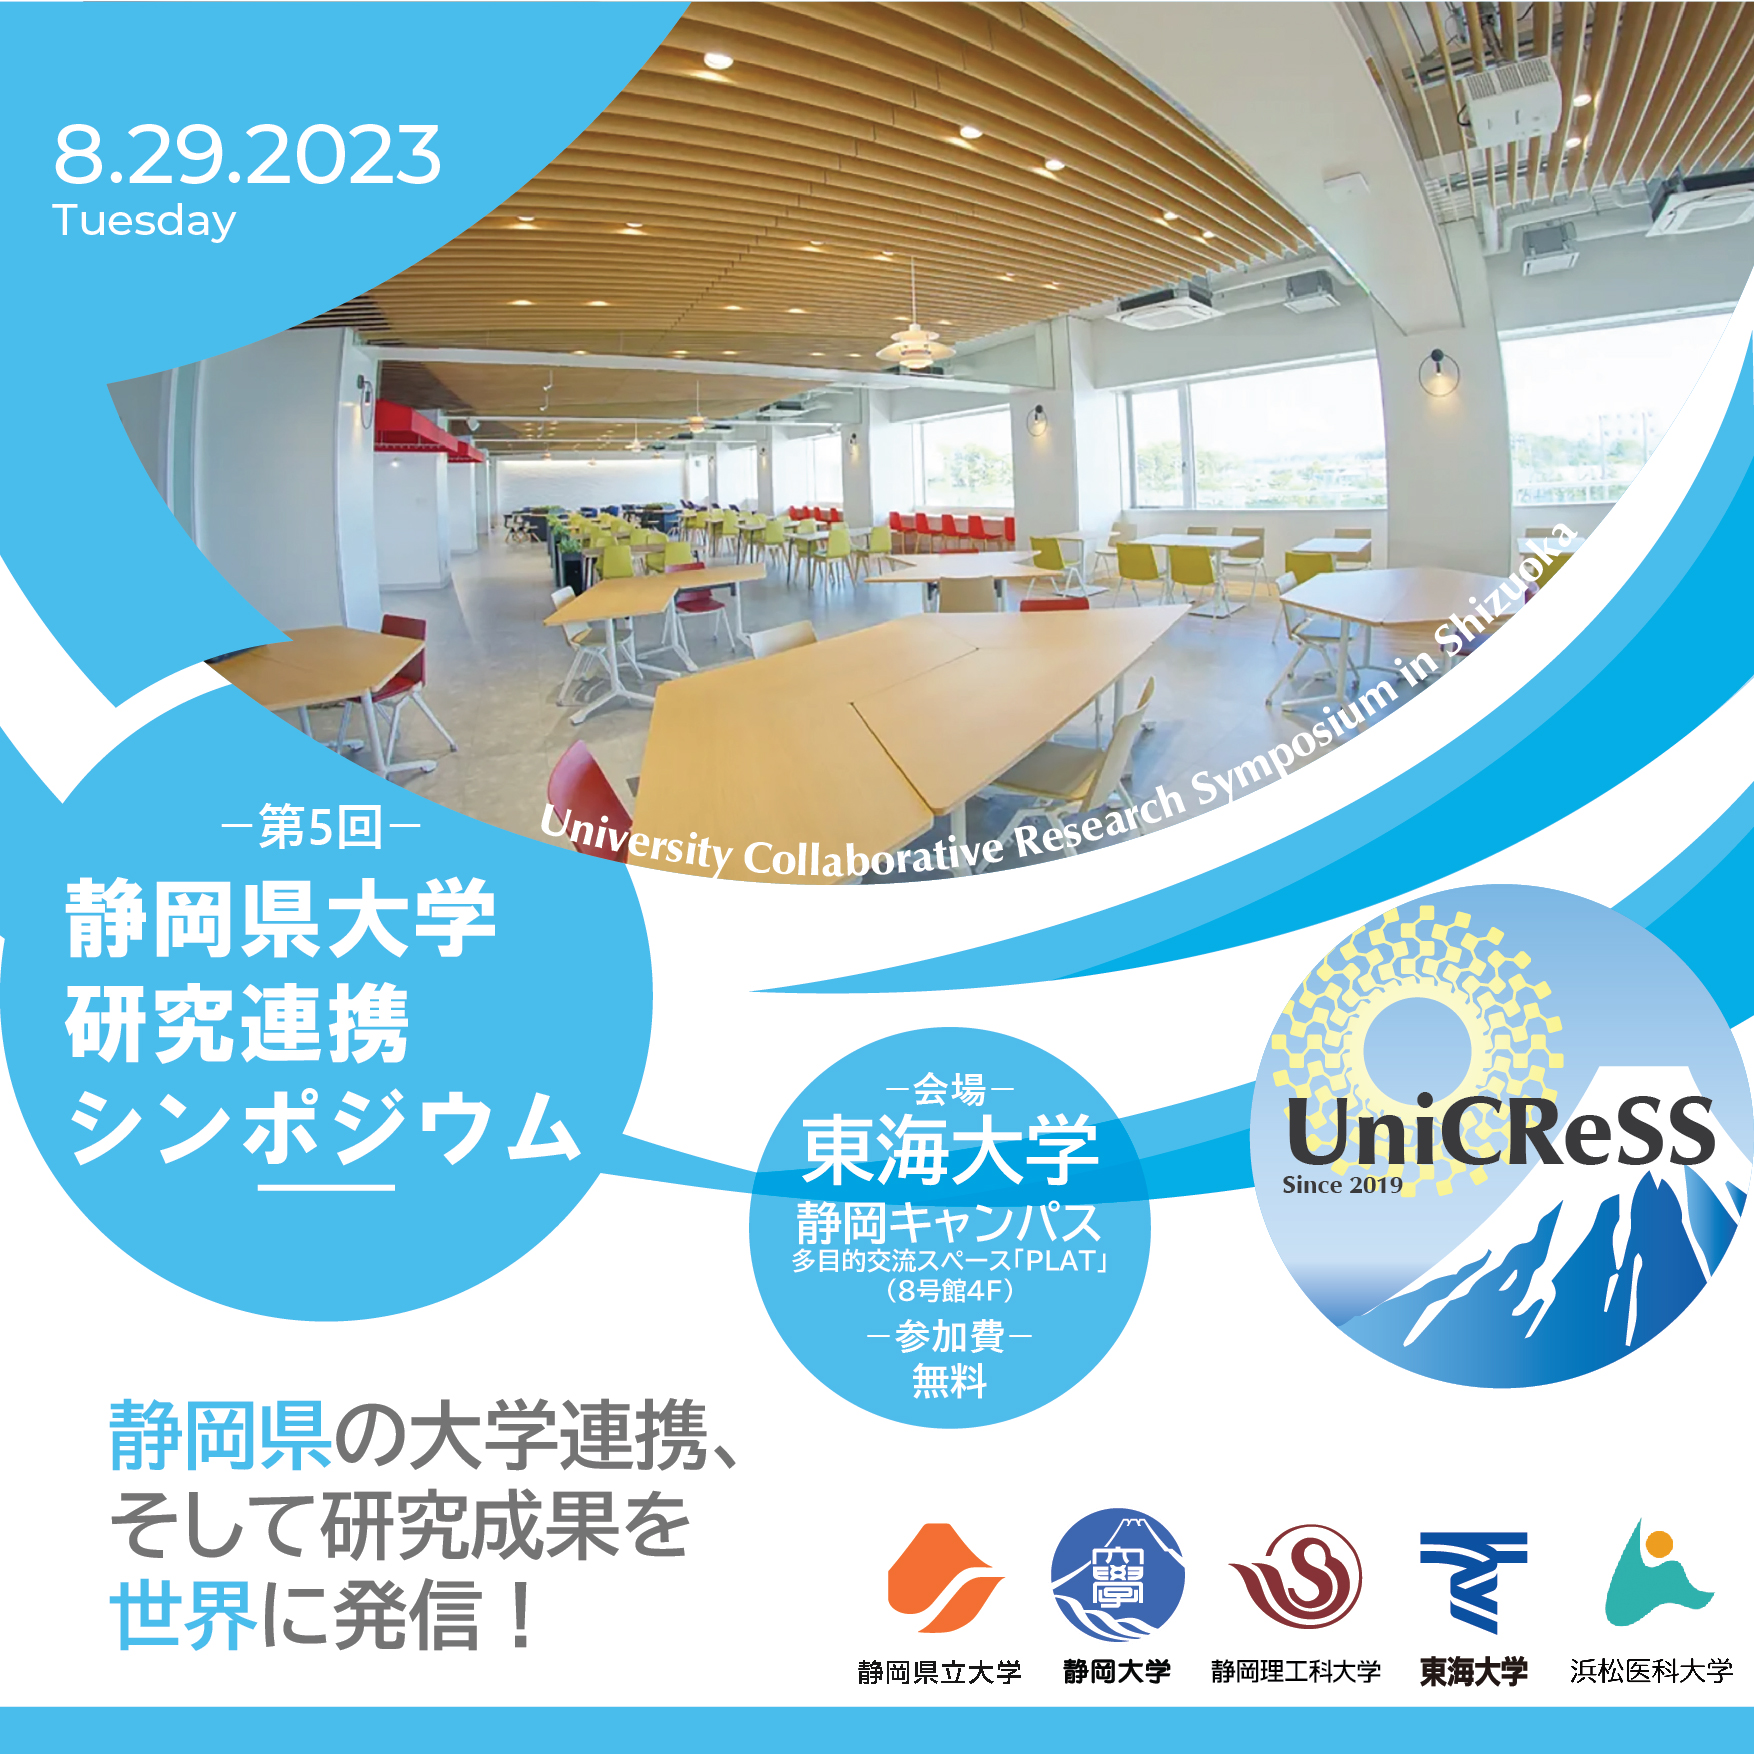 UniCReSS：静岡県大学研究連携シンポジウム開催のご案内